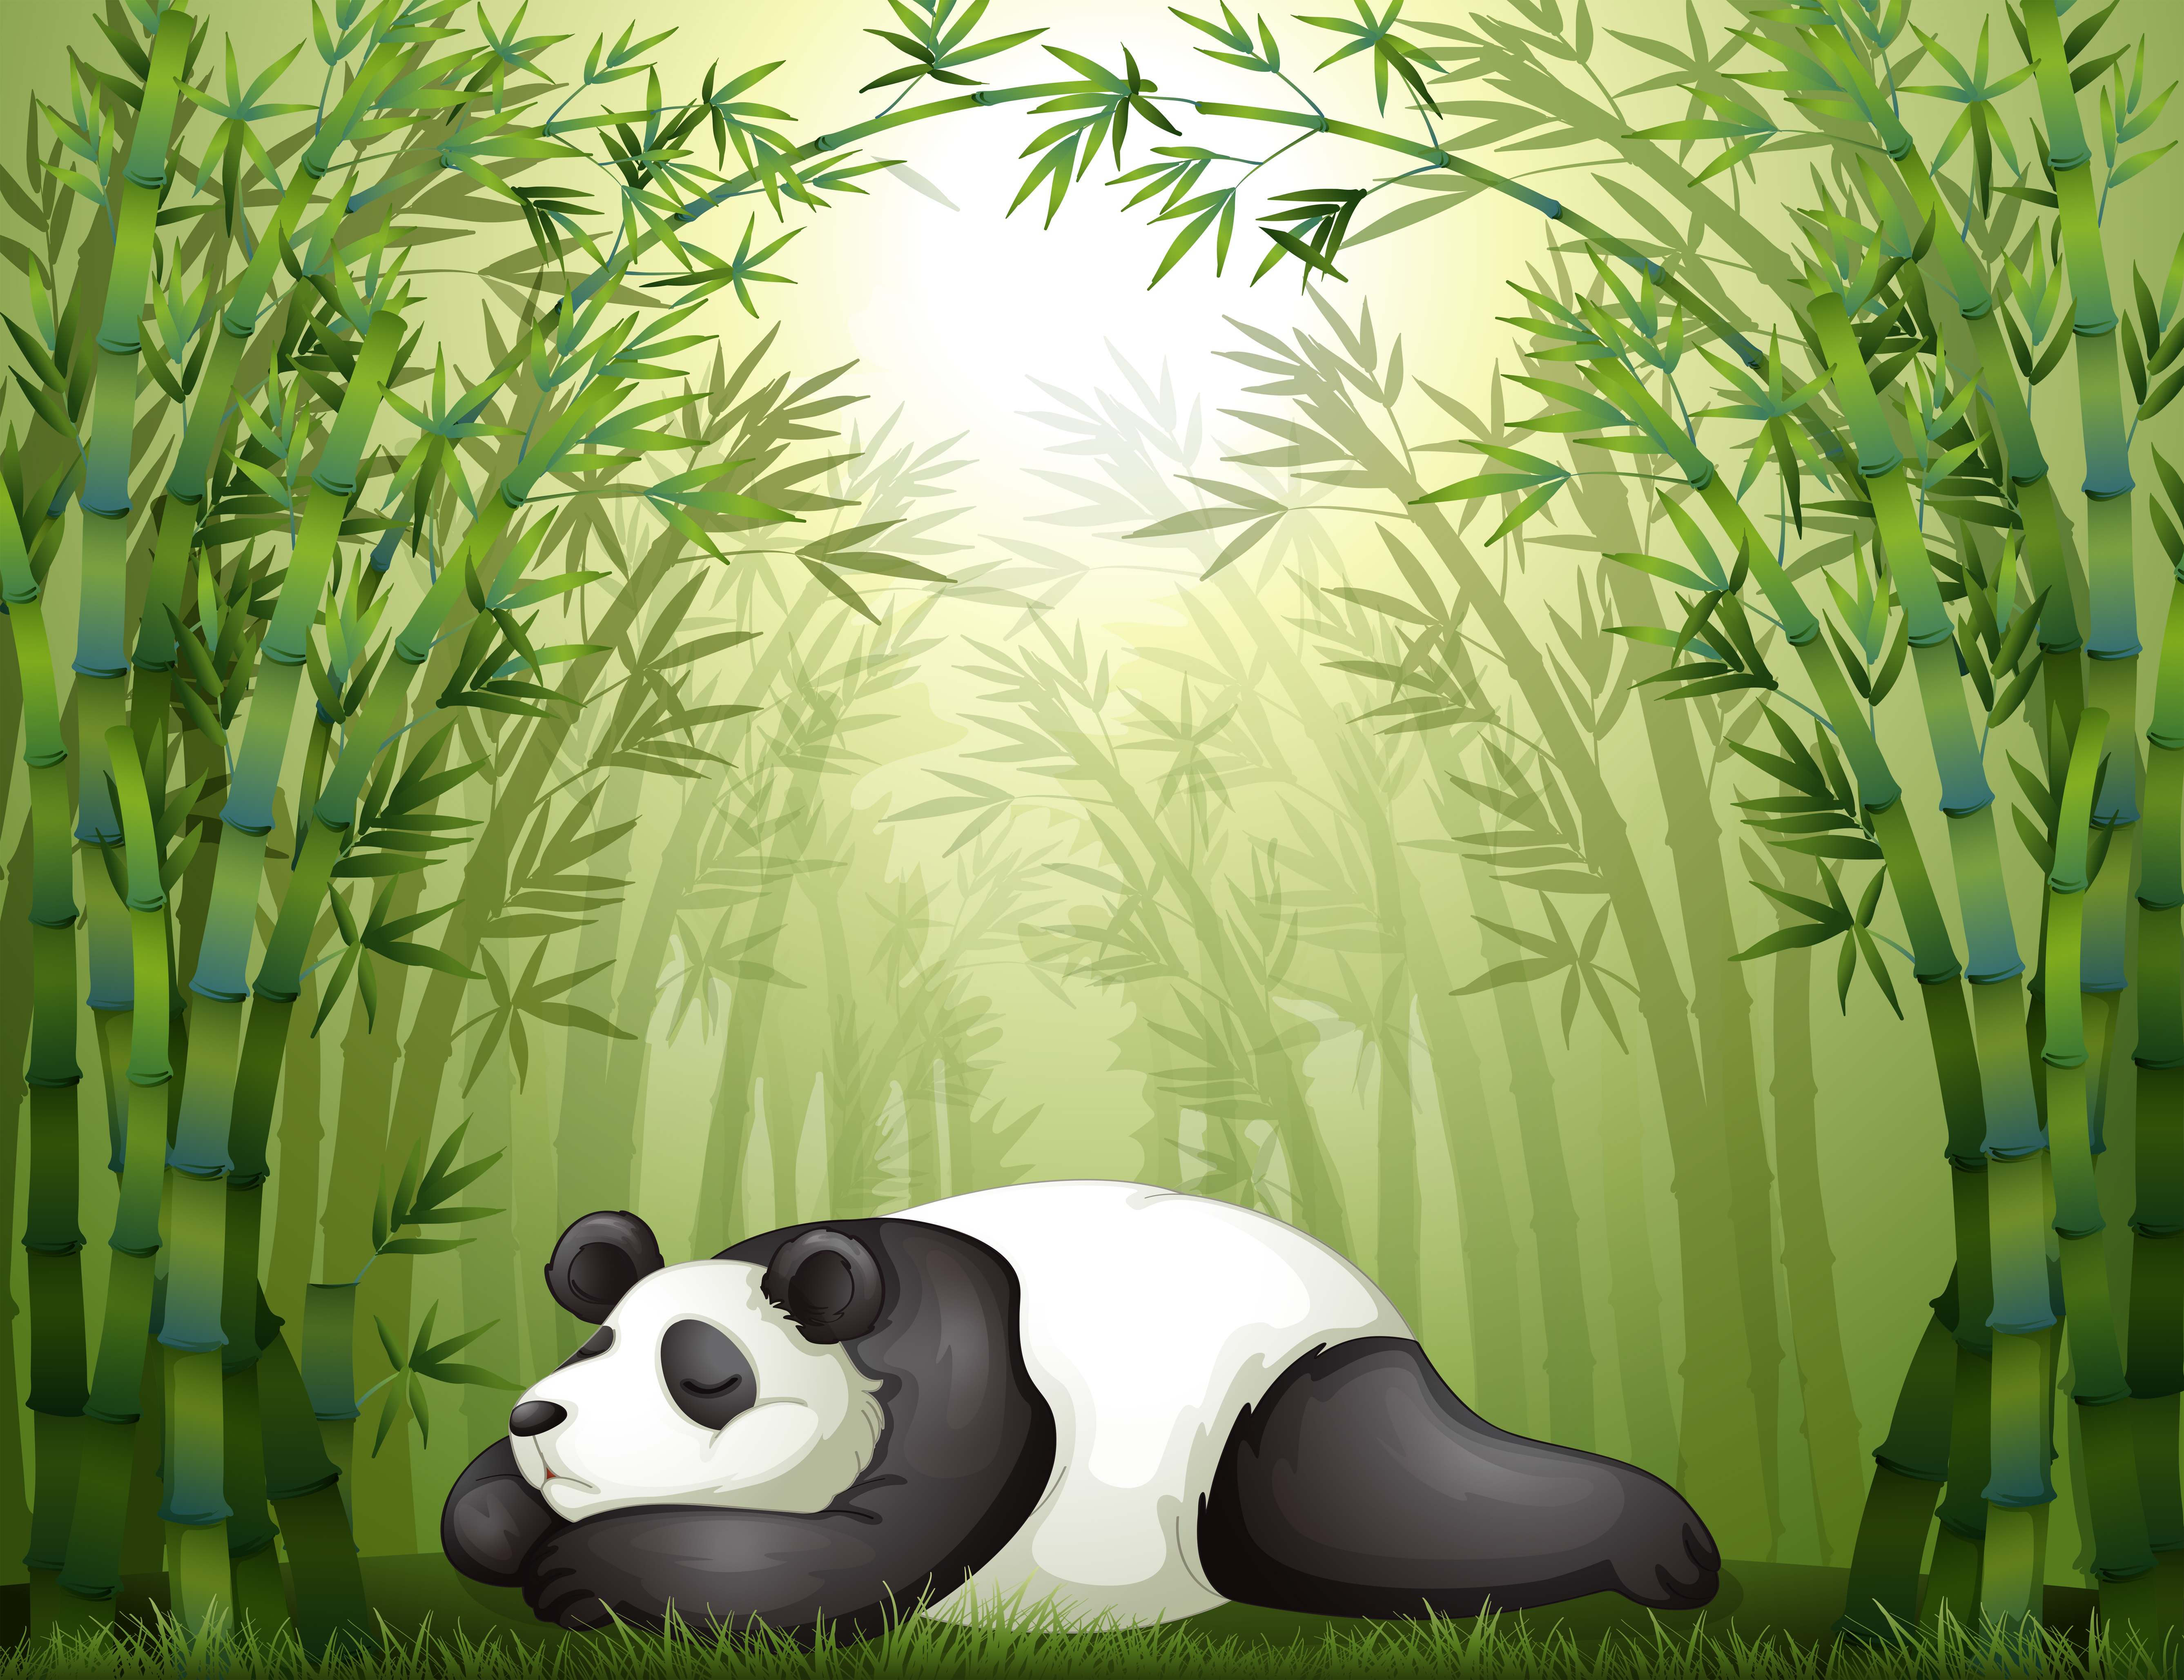 Filhos de panda dos desenhos animados. pequenos pandas, animais engraçados  com bambu e um fofo urso panda adormecido.